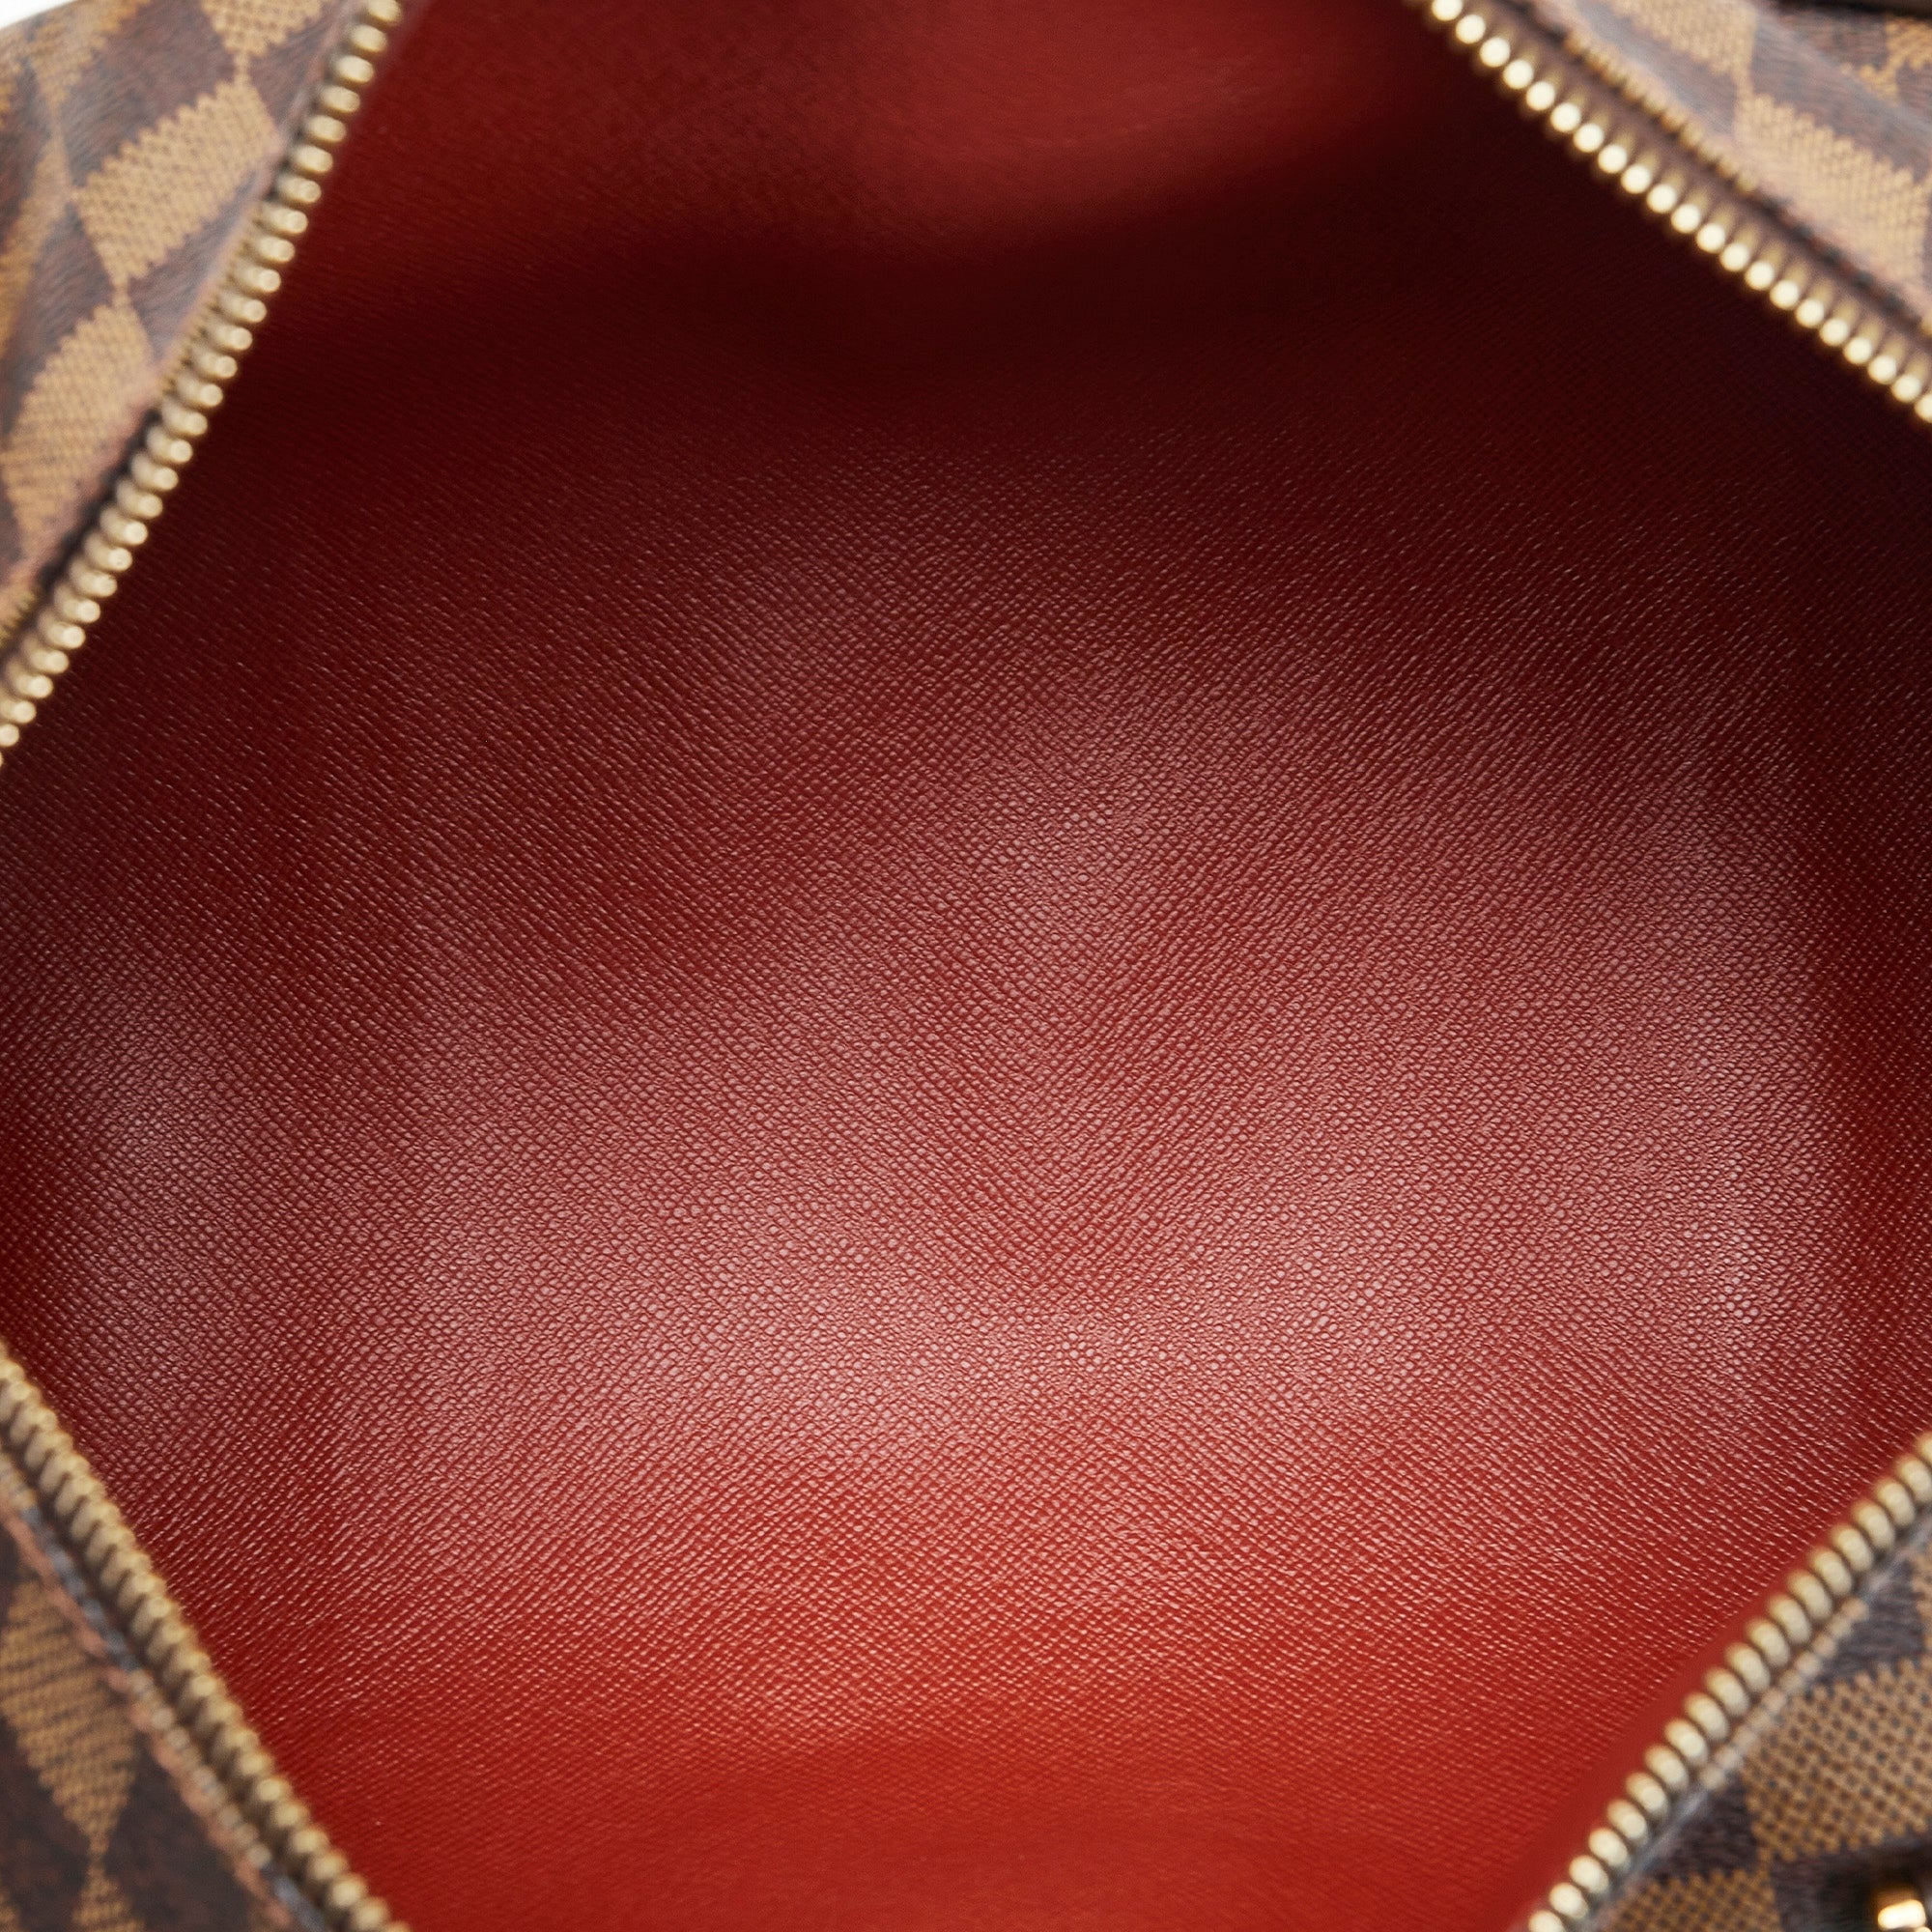 Louis Vuitton Damier Ebene Papillon 30 - Brown Shoulder Bags